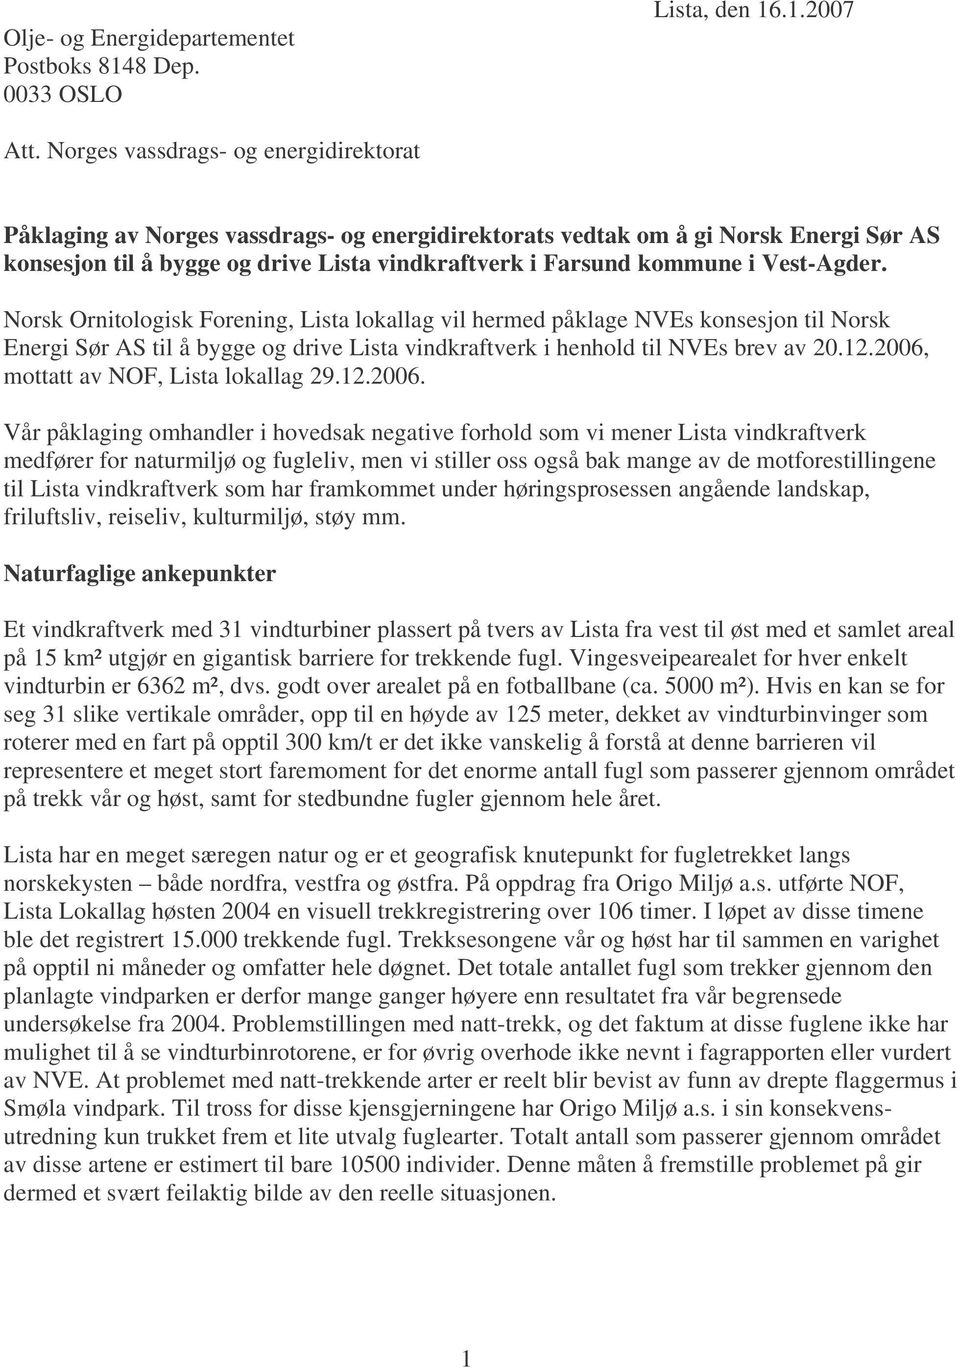 Vest-Agder. Norsk Ornitologisk Forening, Lista lokallag vil hermed påklage NVEs konsesjon til Norsk Energi Sør AS til å bygge og drive Lista vindkraftverk i henhold til NVEs brev av 20.12.